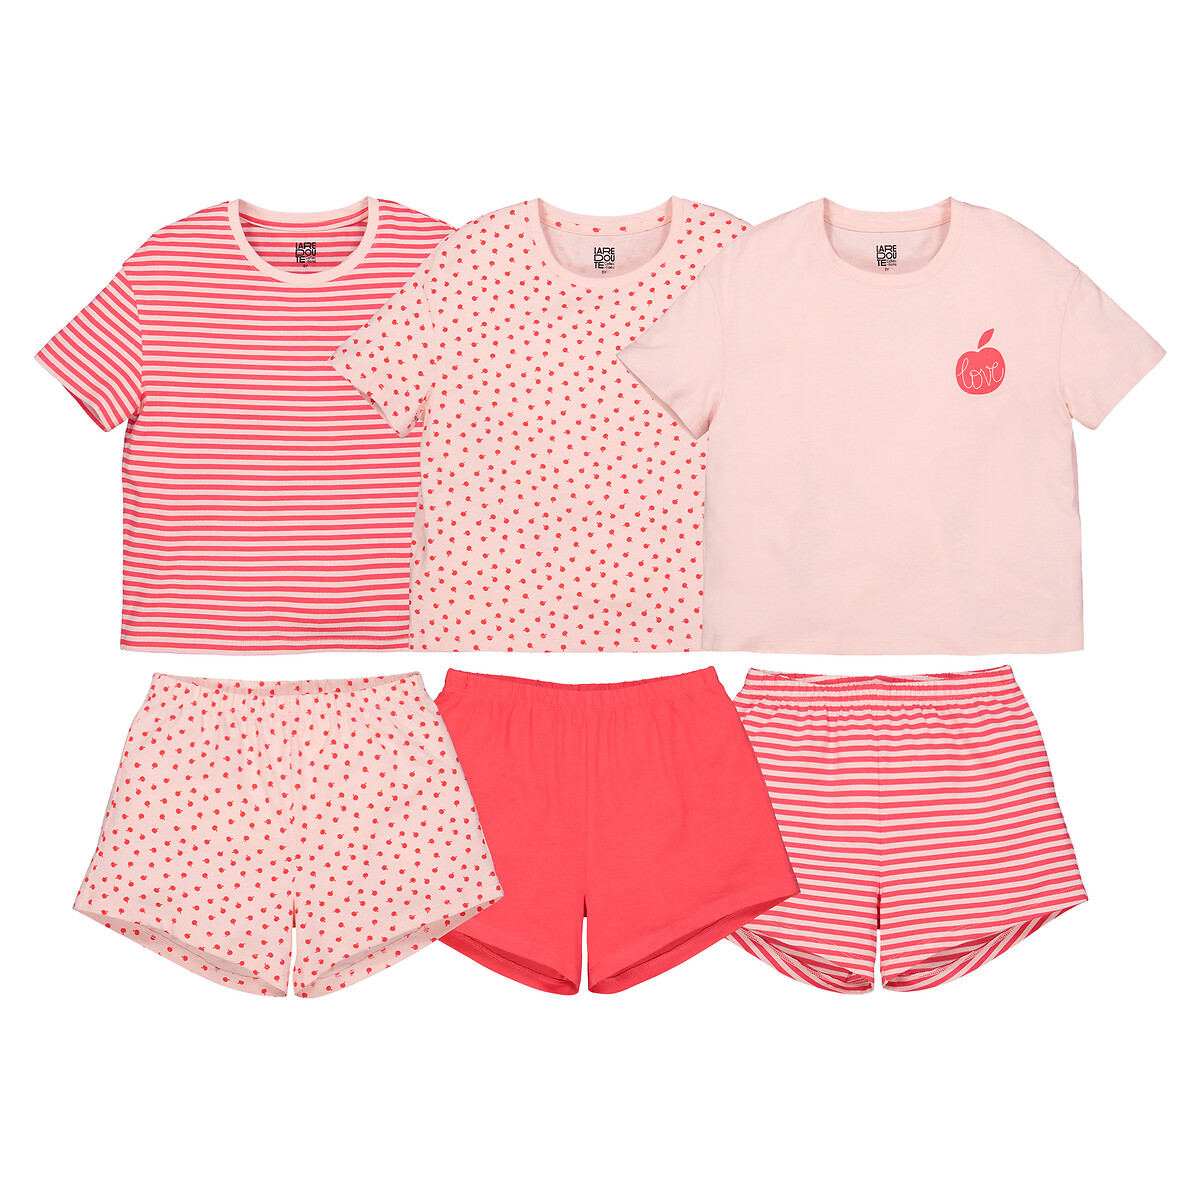 Комплект из трех пижам La Redoute 4 года - 102 см розовый комплект из трех пижам la redoute 4 года 102 см розовый